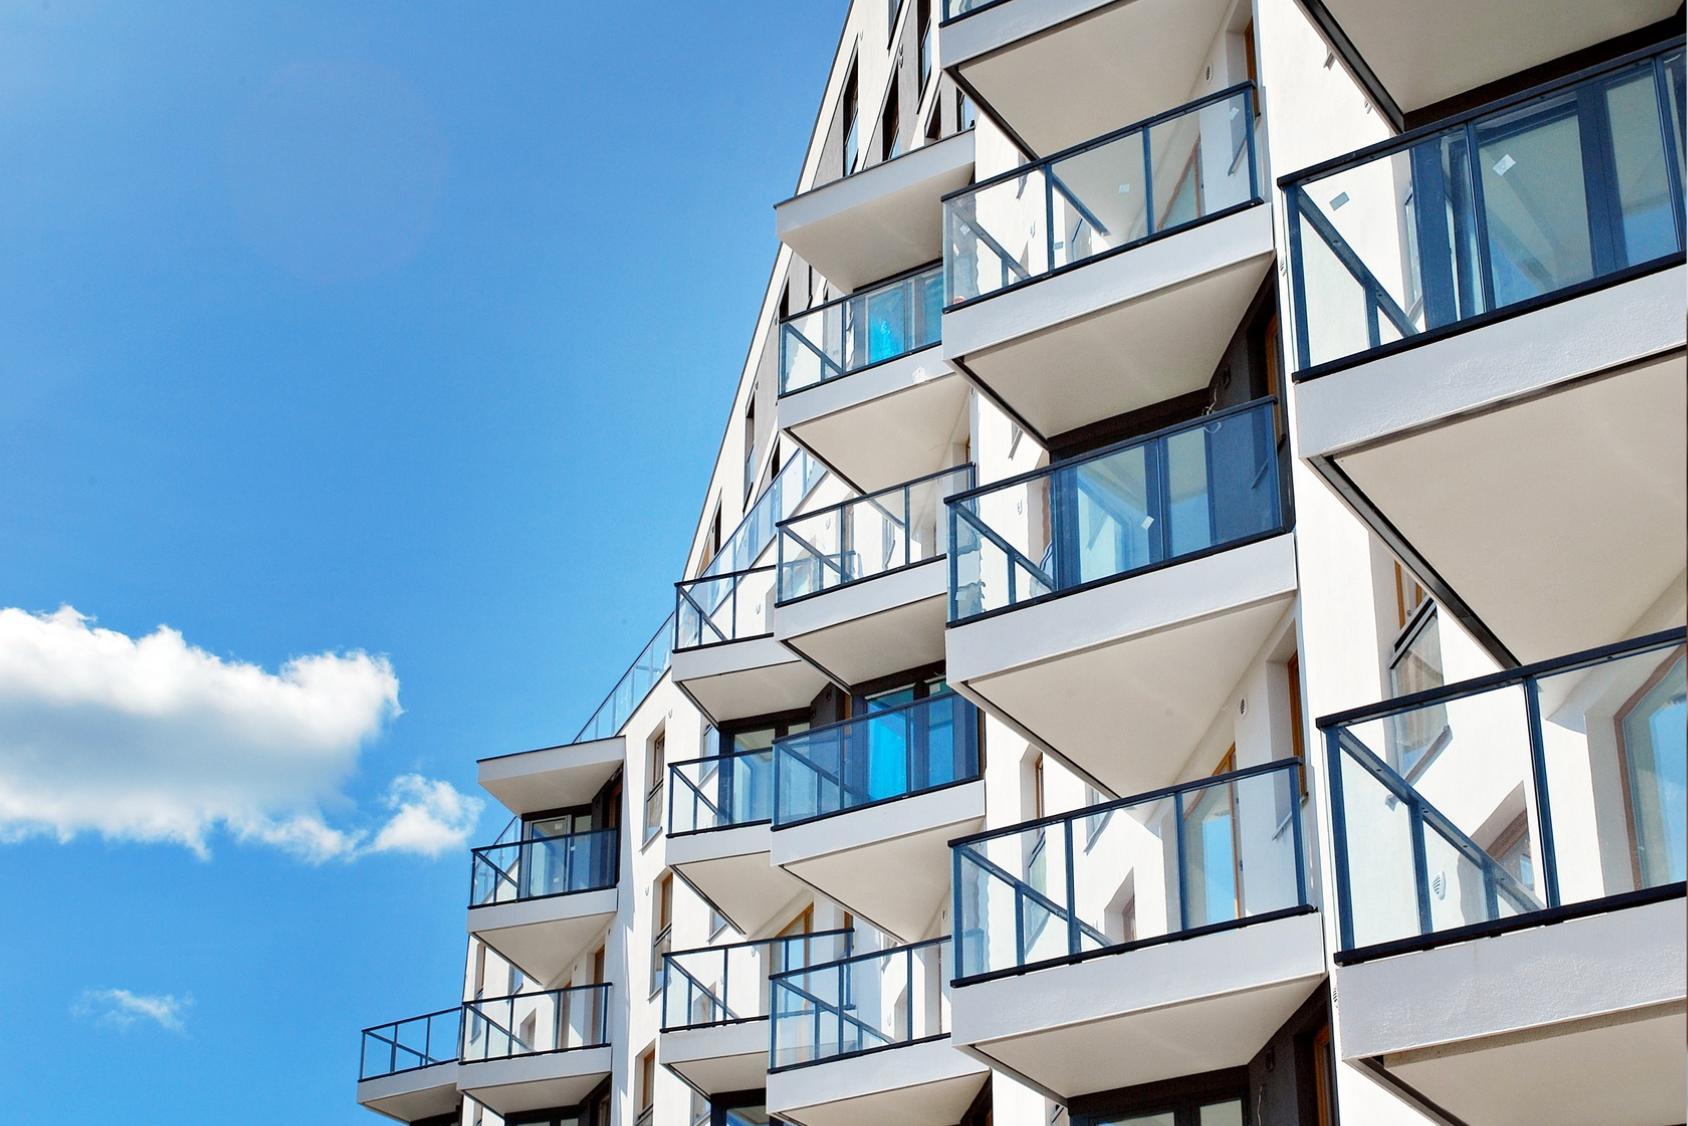 Axium verwaltet Reba-Wohnungen: Property-Management für 228 Wohneinheiten in Berlin und Brandenburg, Kassel und Leipzig